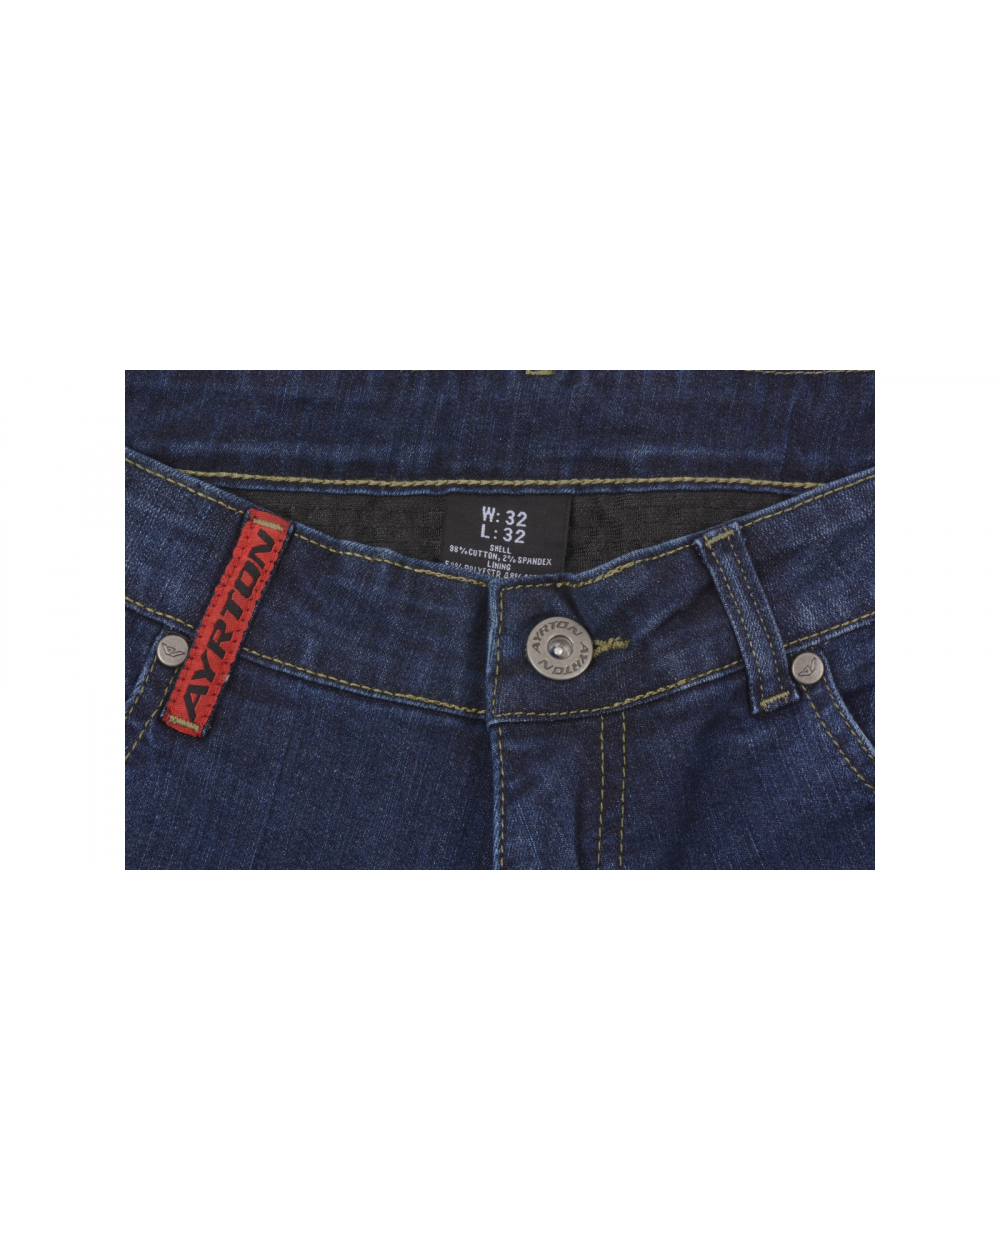 Specialty phone Staple kalhoty, jeansy 505, AYRTON (modré) - www.moto4speed.cz